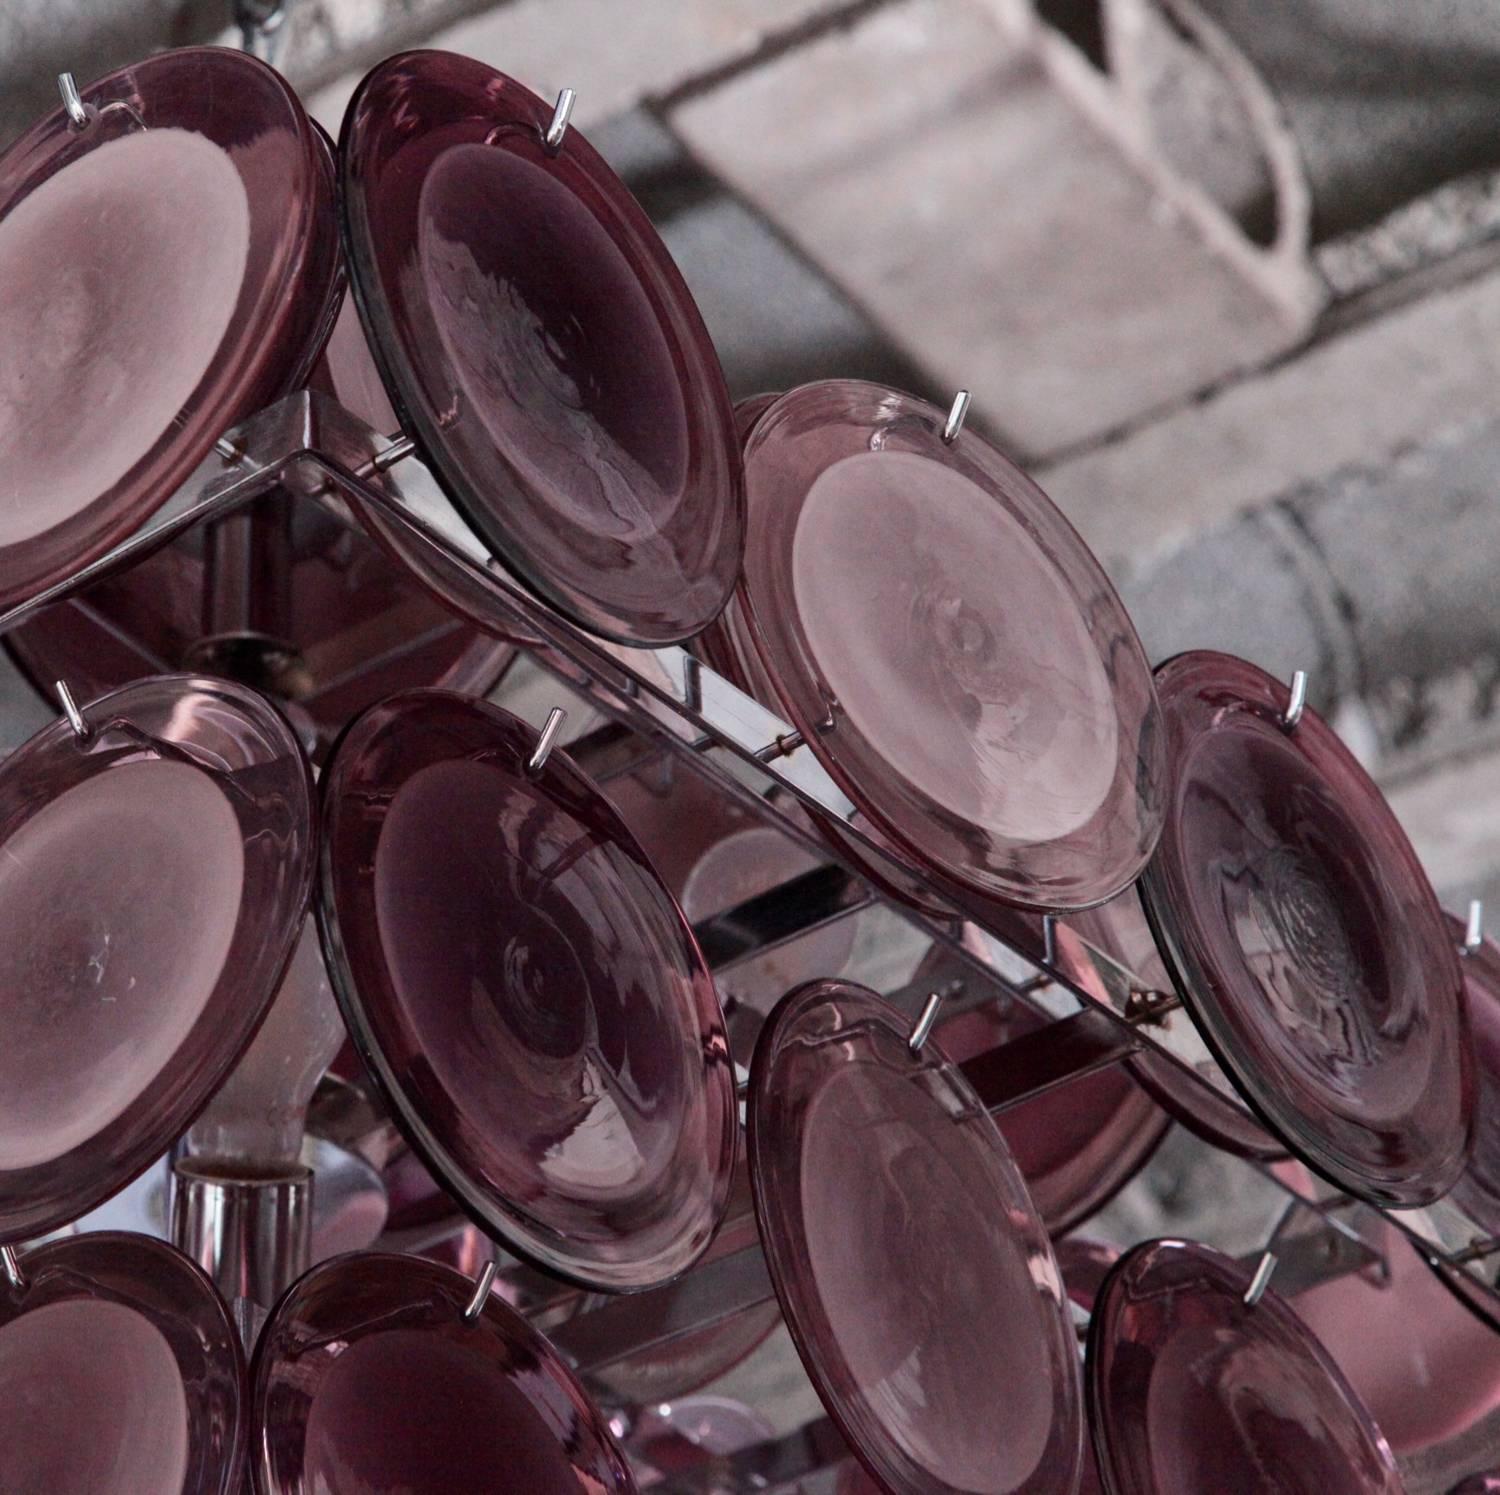 Merveilleux grand lustre à disques en verre de Murano de couleur améthyste attribué à Vistosi.
Le lustre est un accroche-regard coloré dans chaque pièce.

Pour plus de sécurité, la lampe doit être contrôlée localement par un spécialiste des